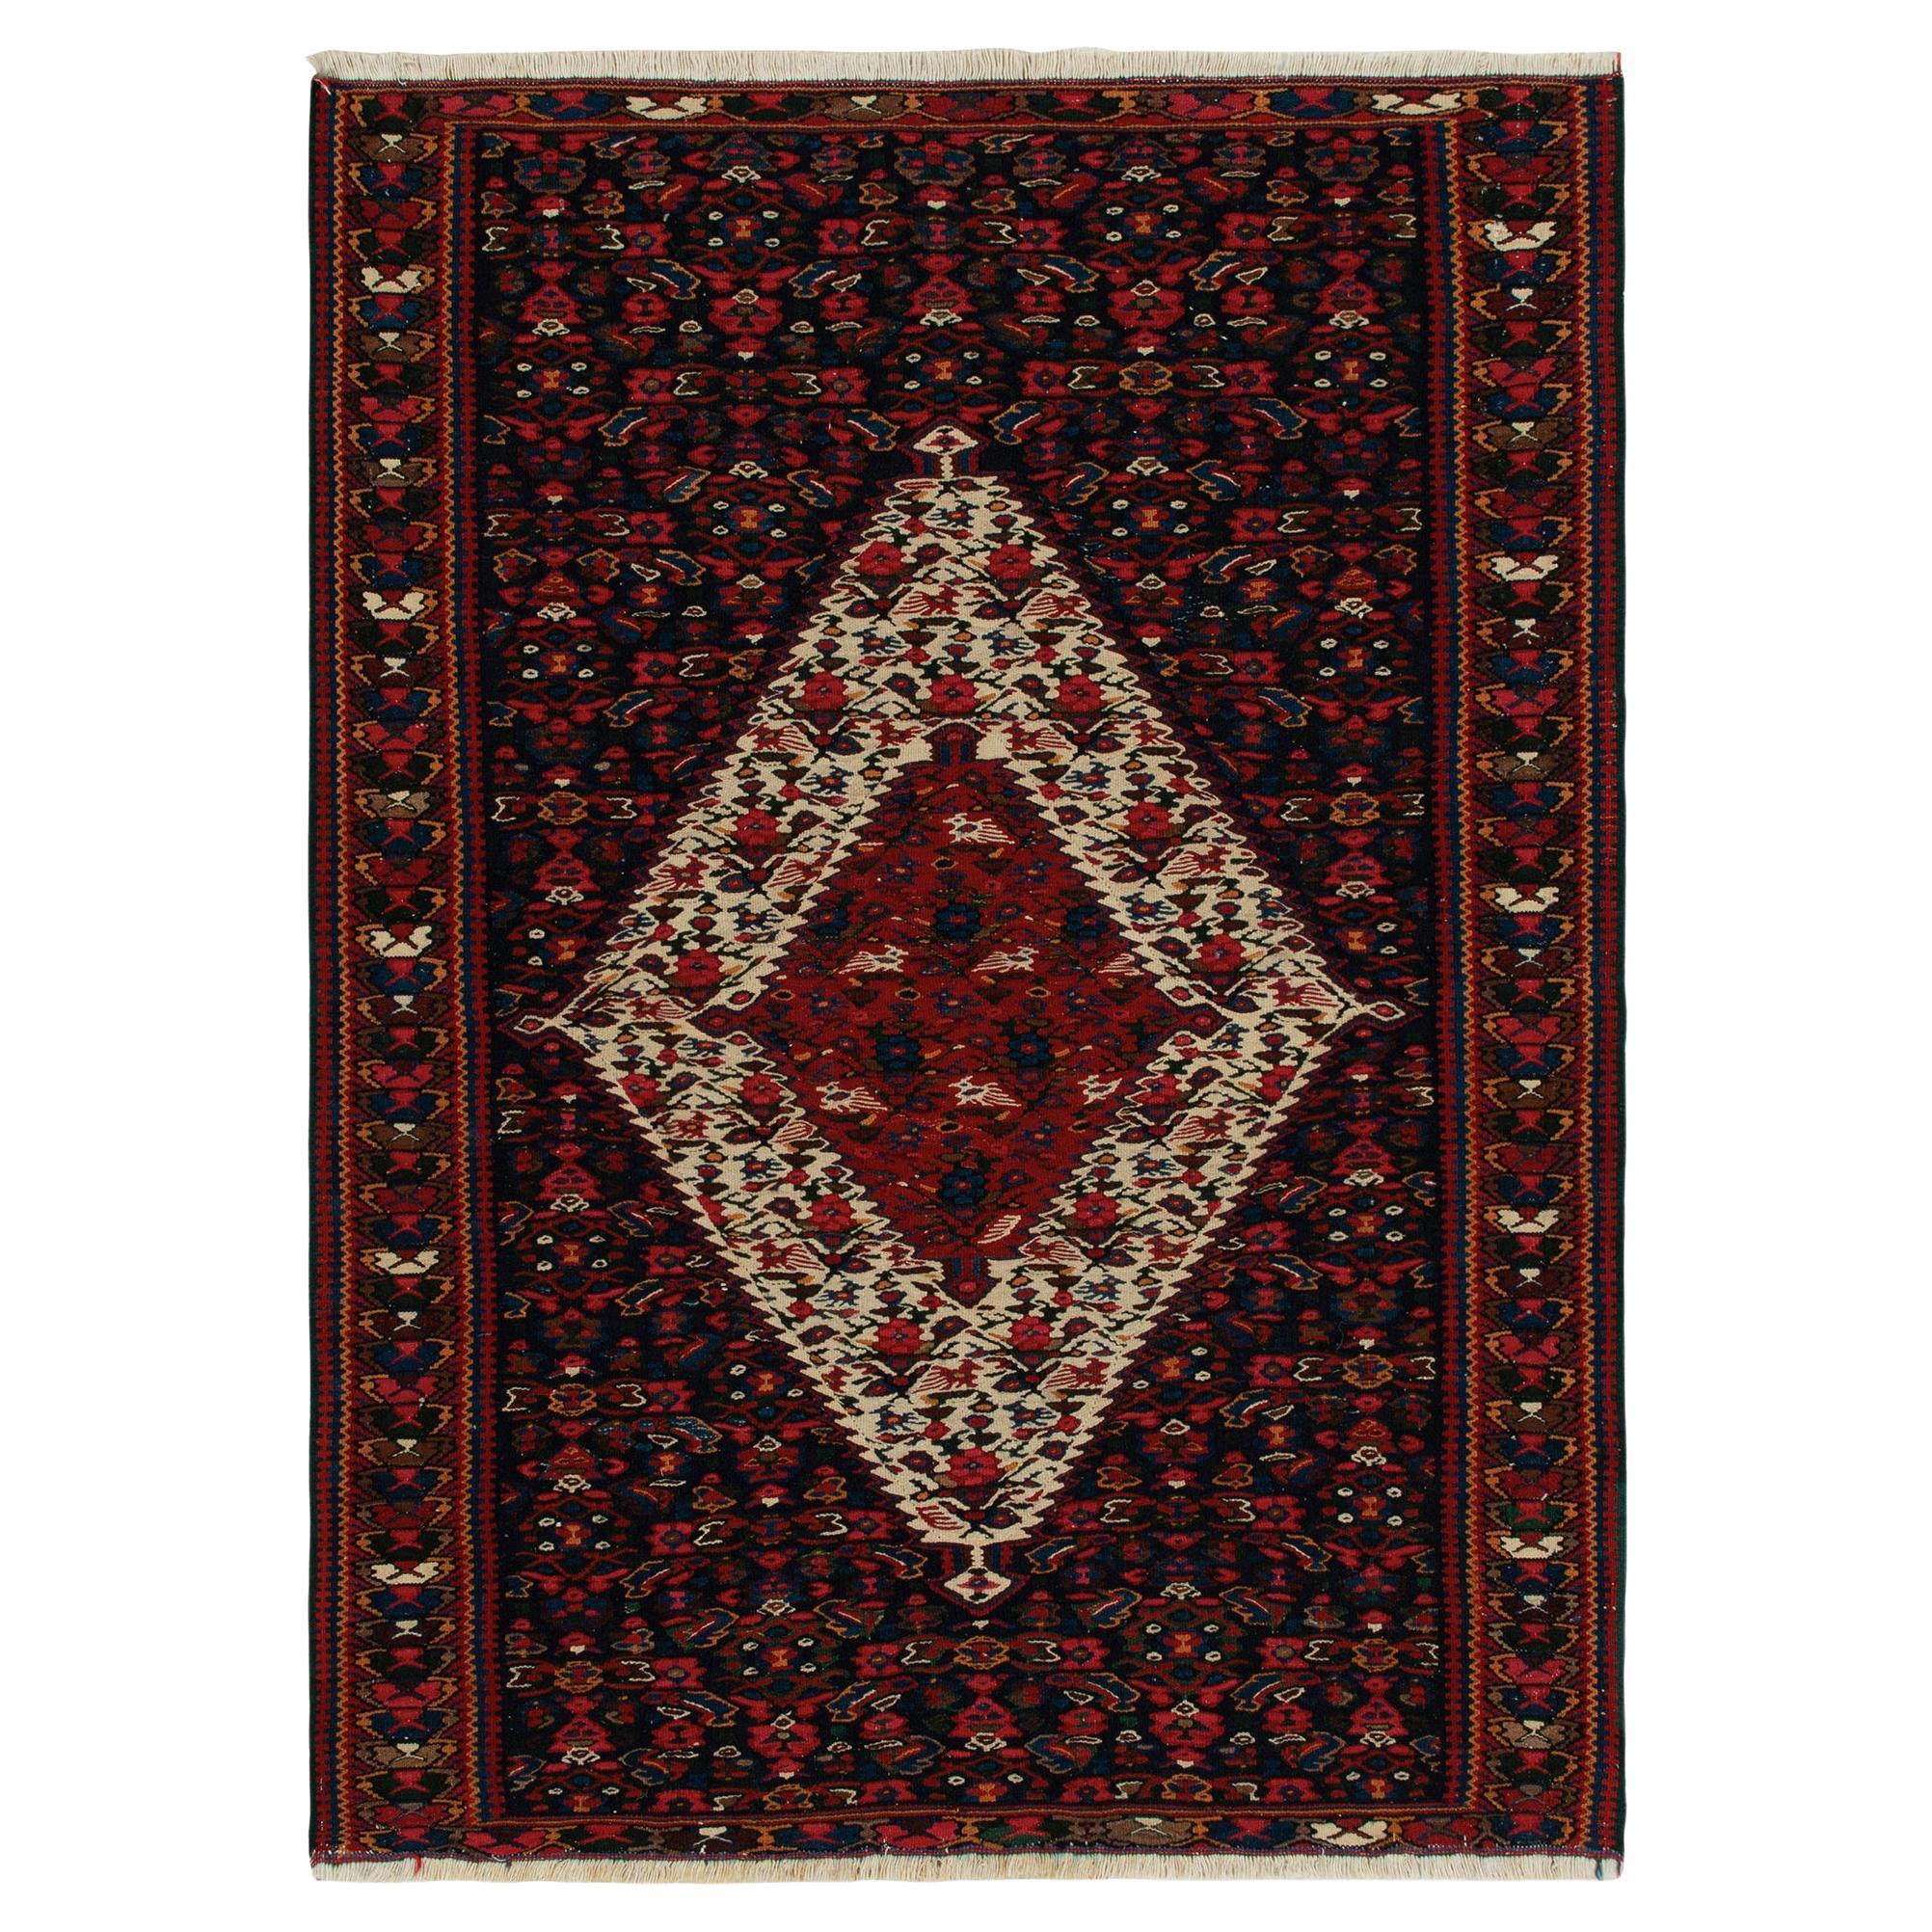 1940s Vintage Senneh Kilim in Red, Beige-Brown Tribal pattern by Rug & Kilim For Sale